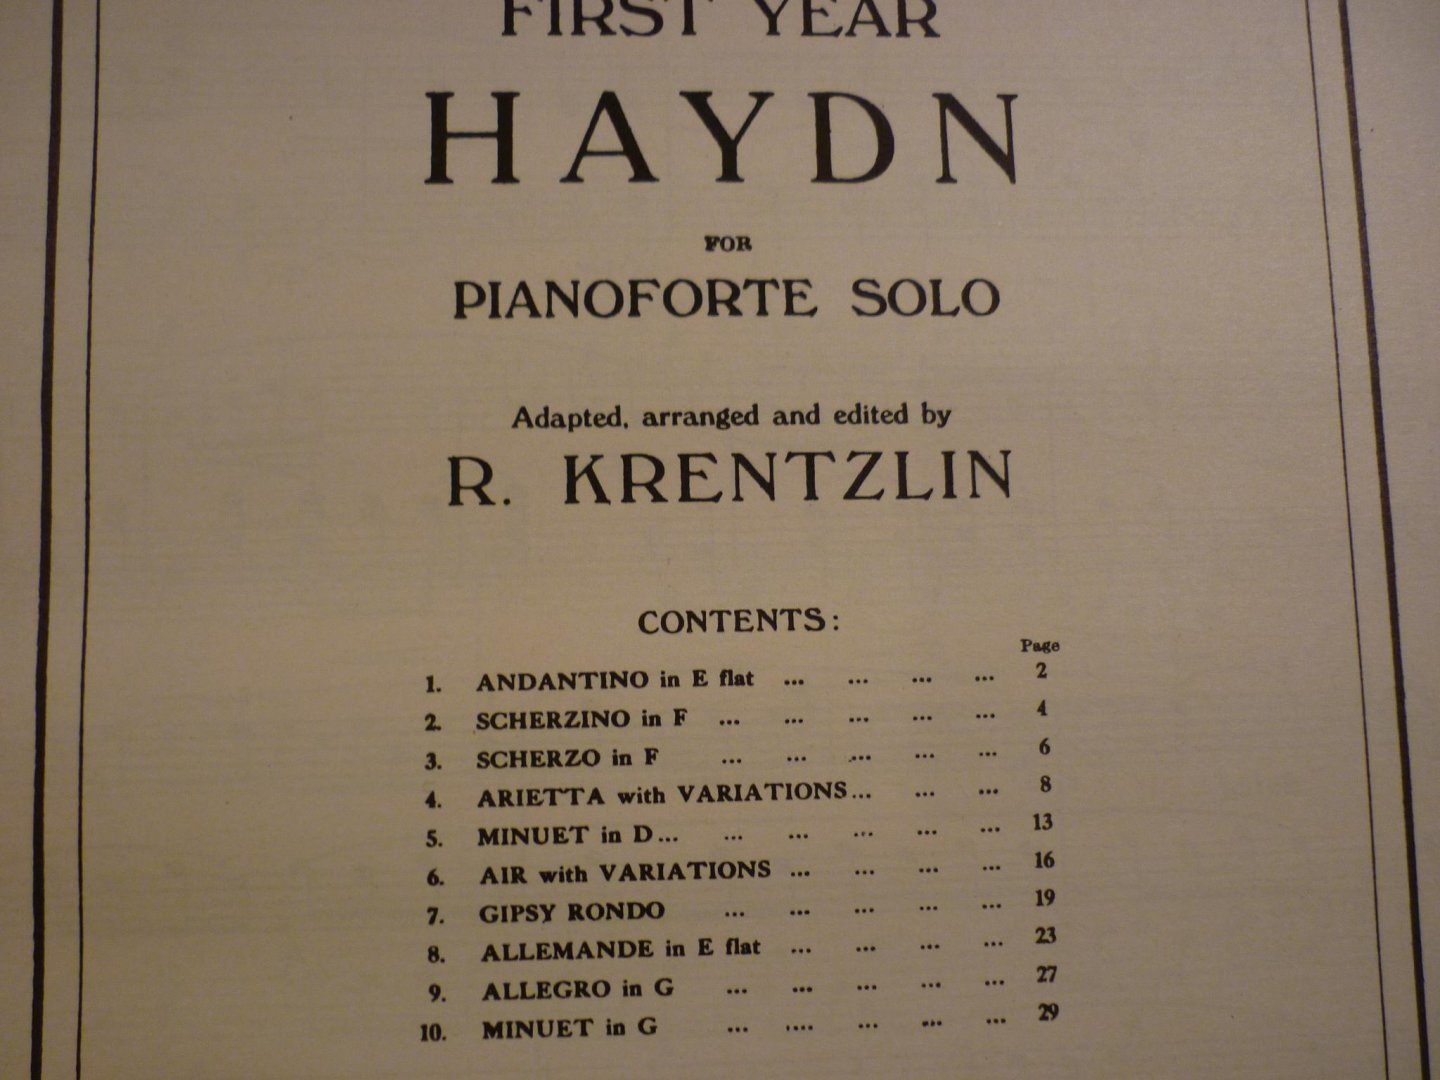 Haydn en Mozart - First Year Haydn  //  Second Year Haydn  //  First Year Mozart  // Second Year Mozart